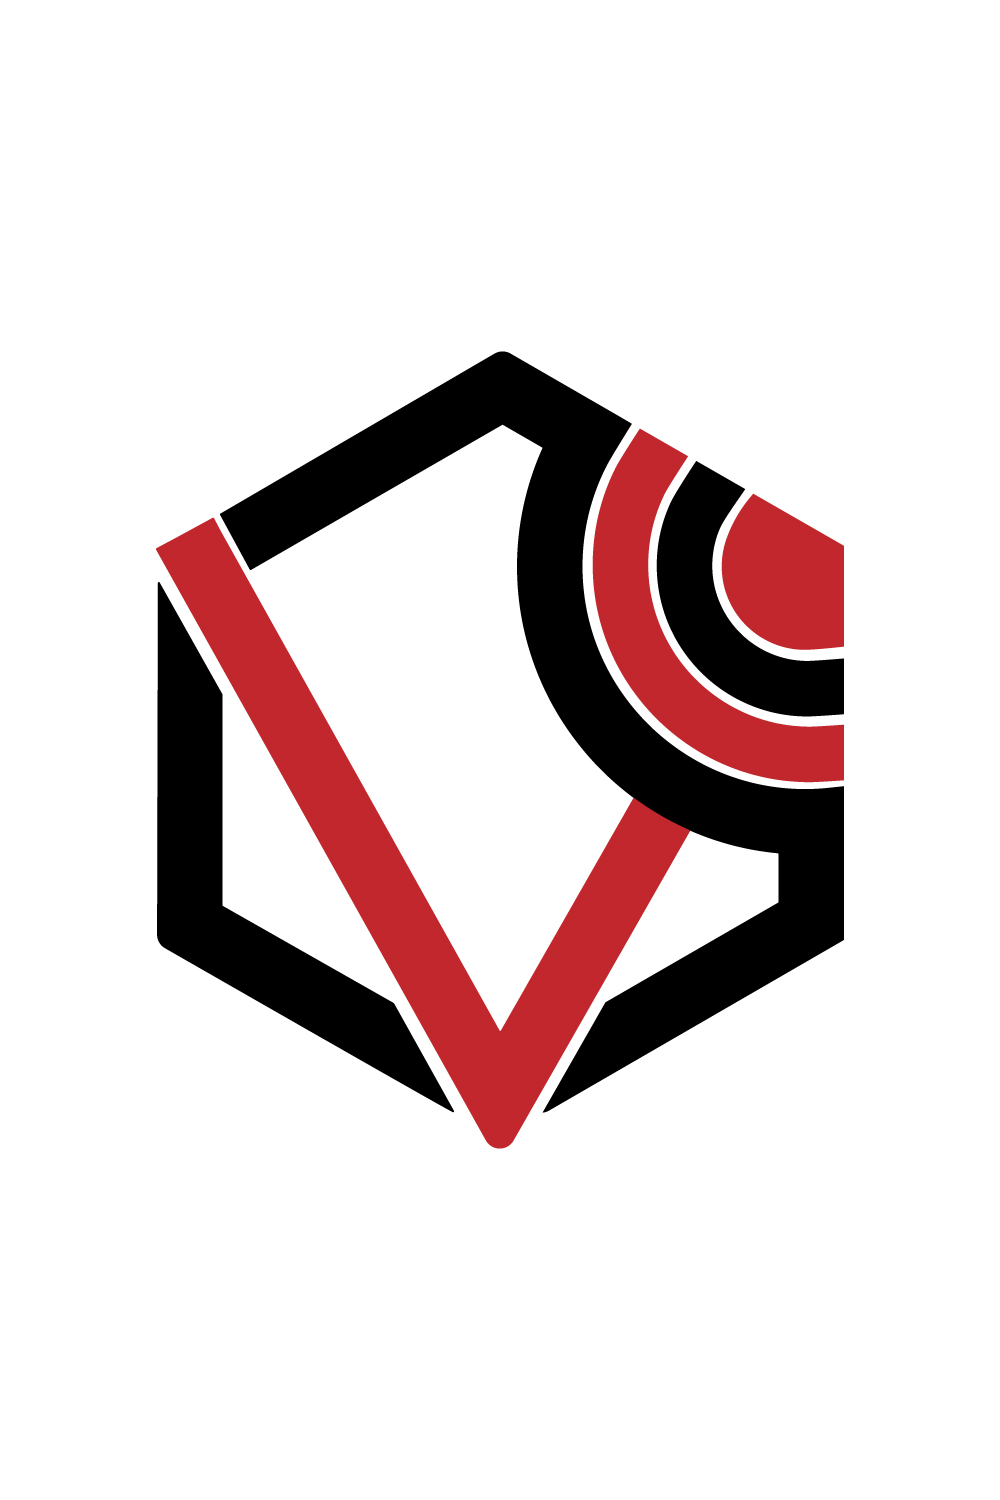 Initials V letters logo vector images V logo design red and black color polygon design pinterest preview image.